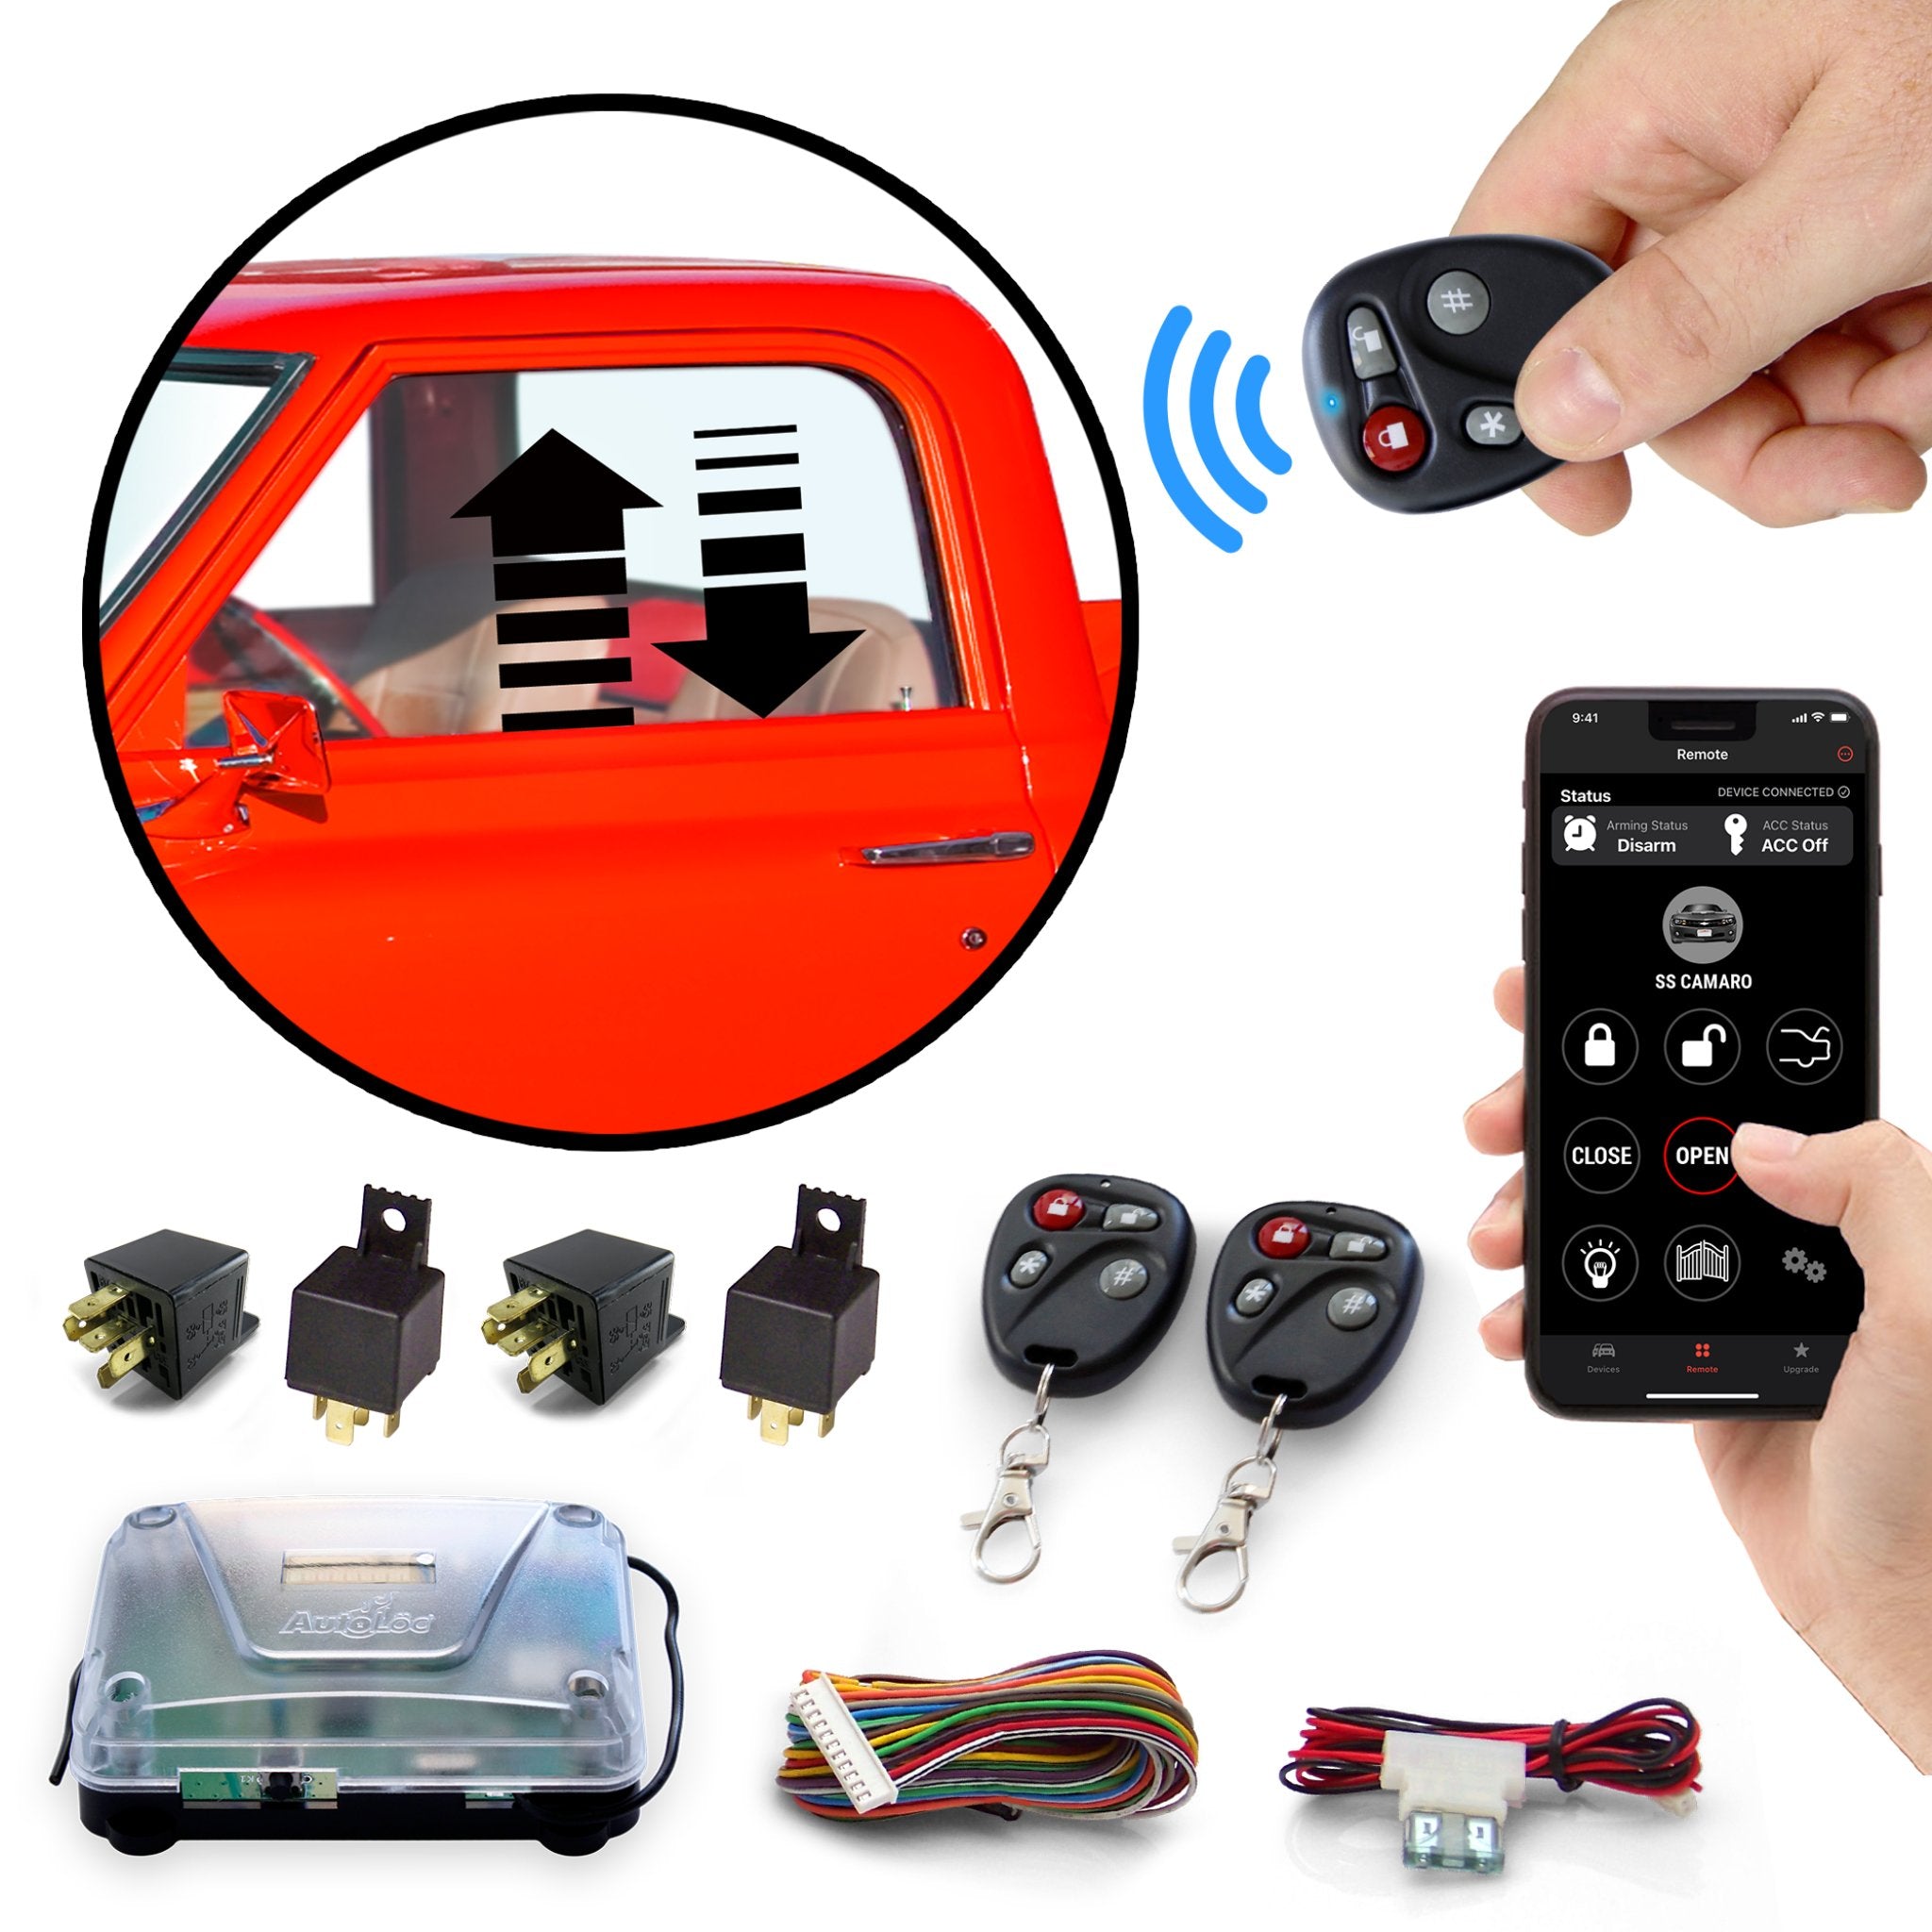 Kit de control remoto de elevalunas eléctrico para automóvil Autoloc con sistema de entrada sin llave de 8 canales